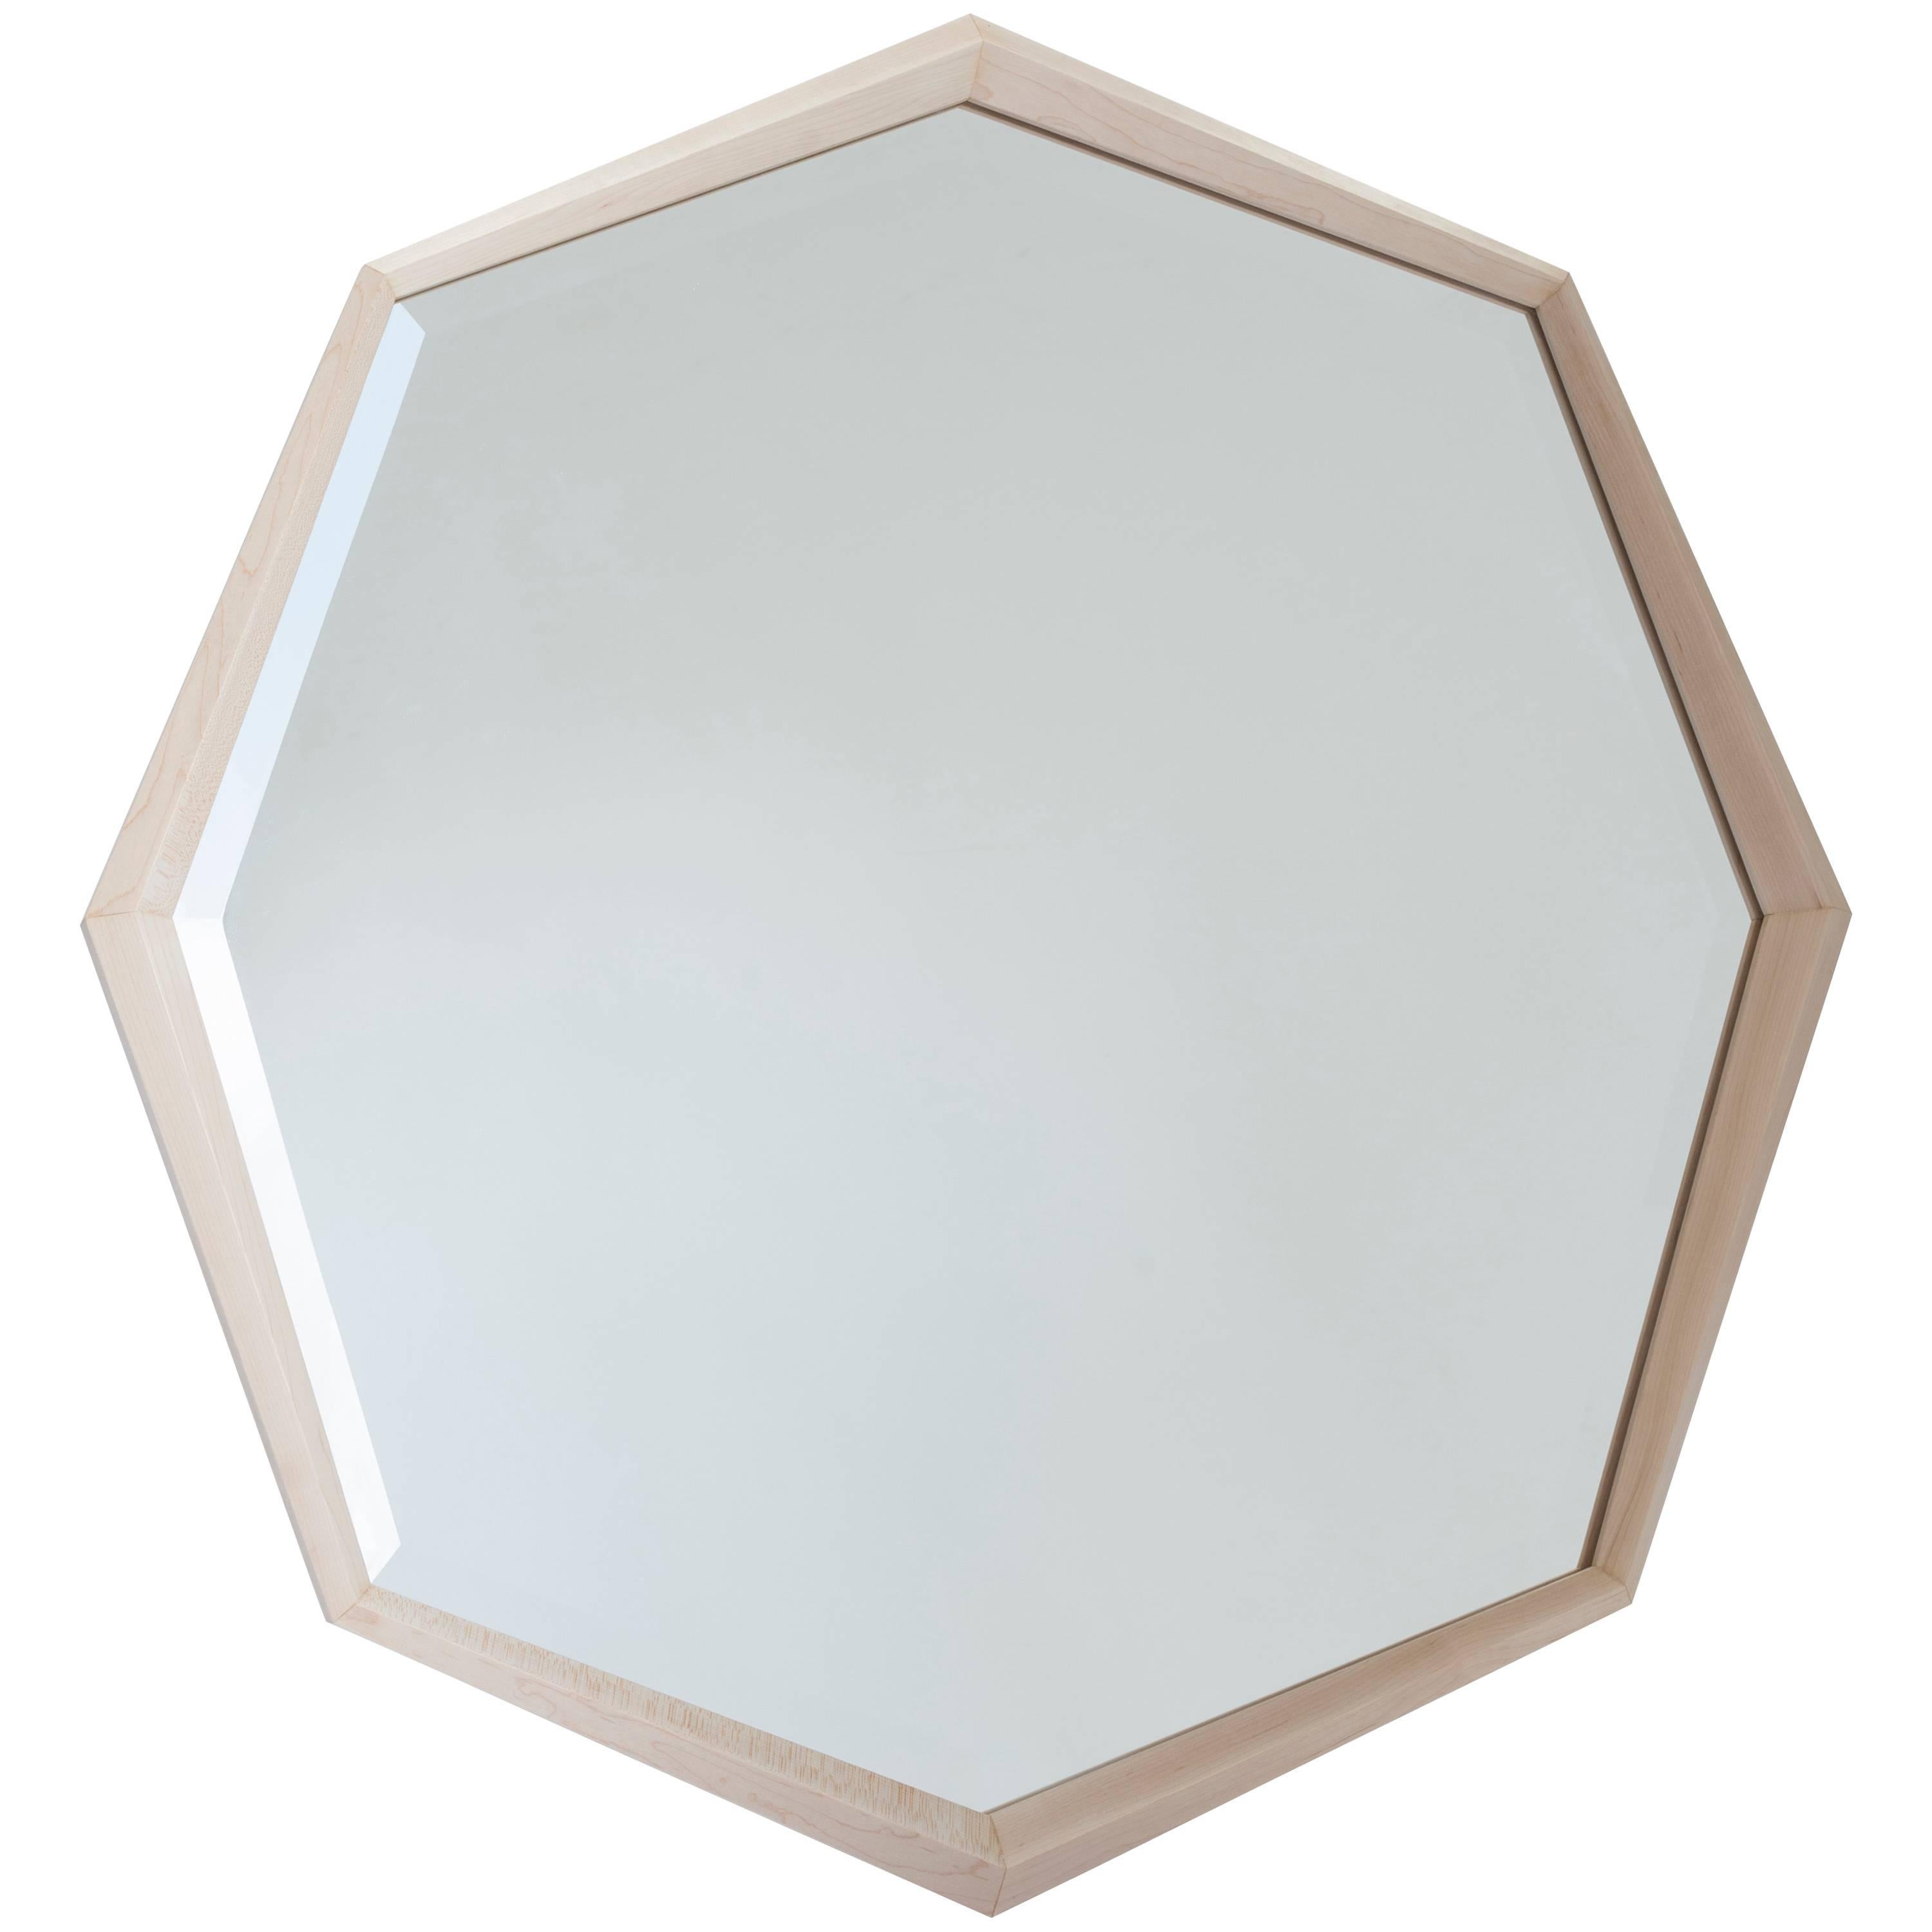 Stellar Mirror Octagonal Beveled Mirror Maple Frame For Sale